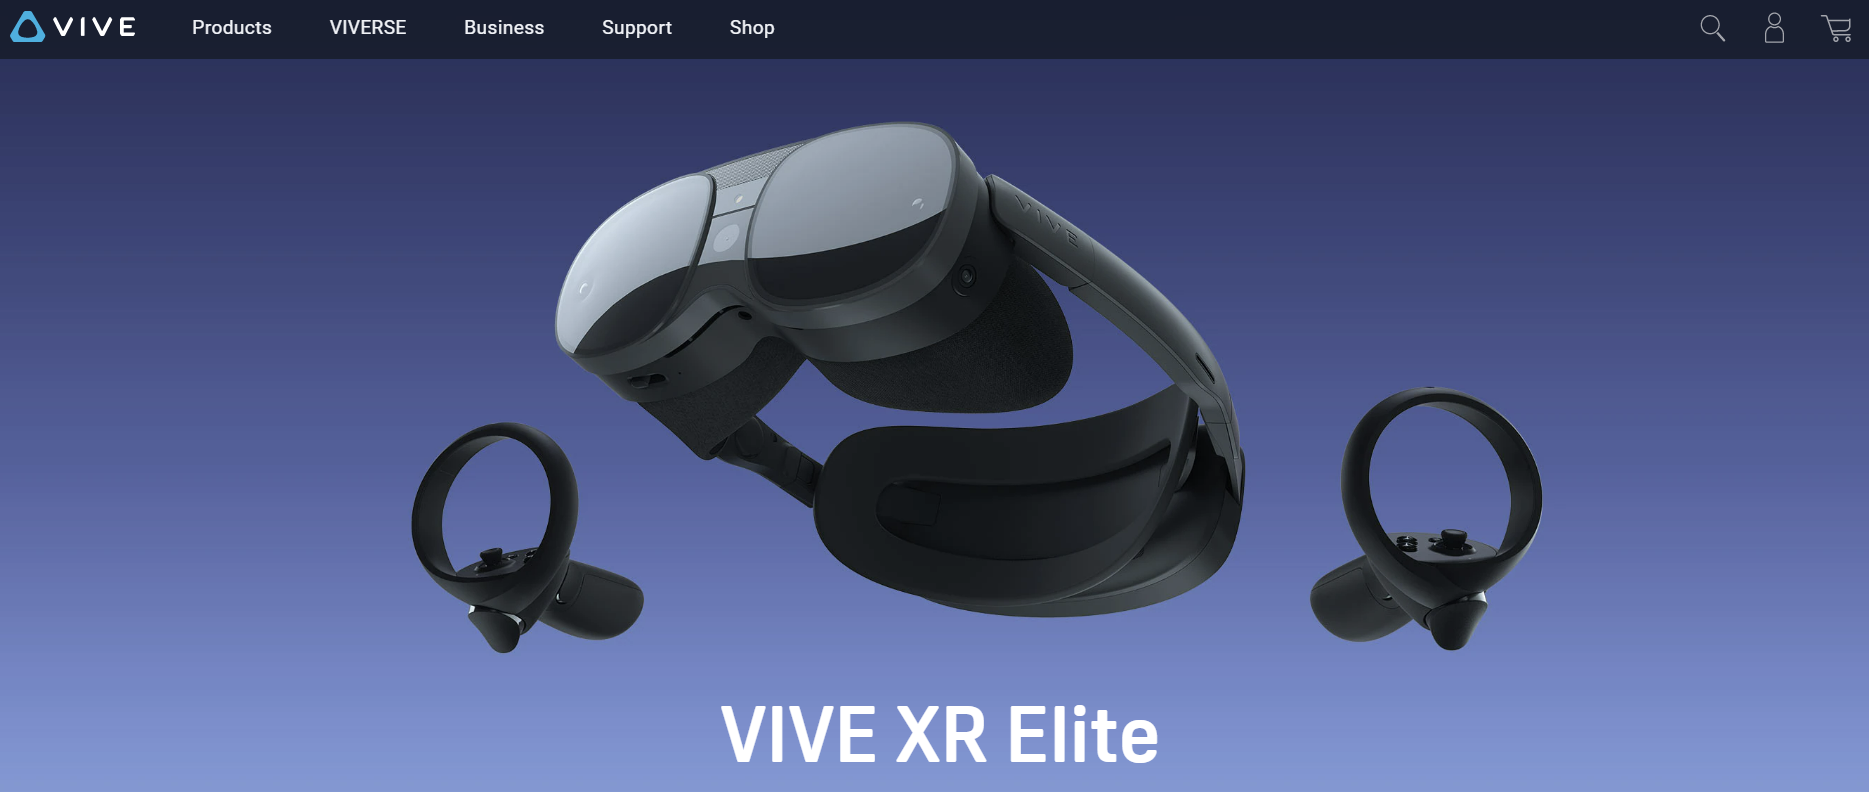 Vive , virtual reality brand